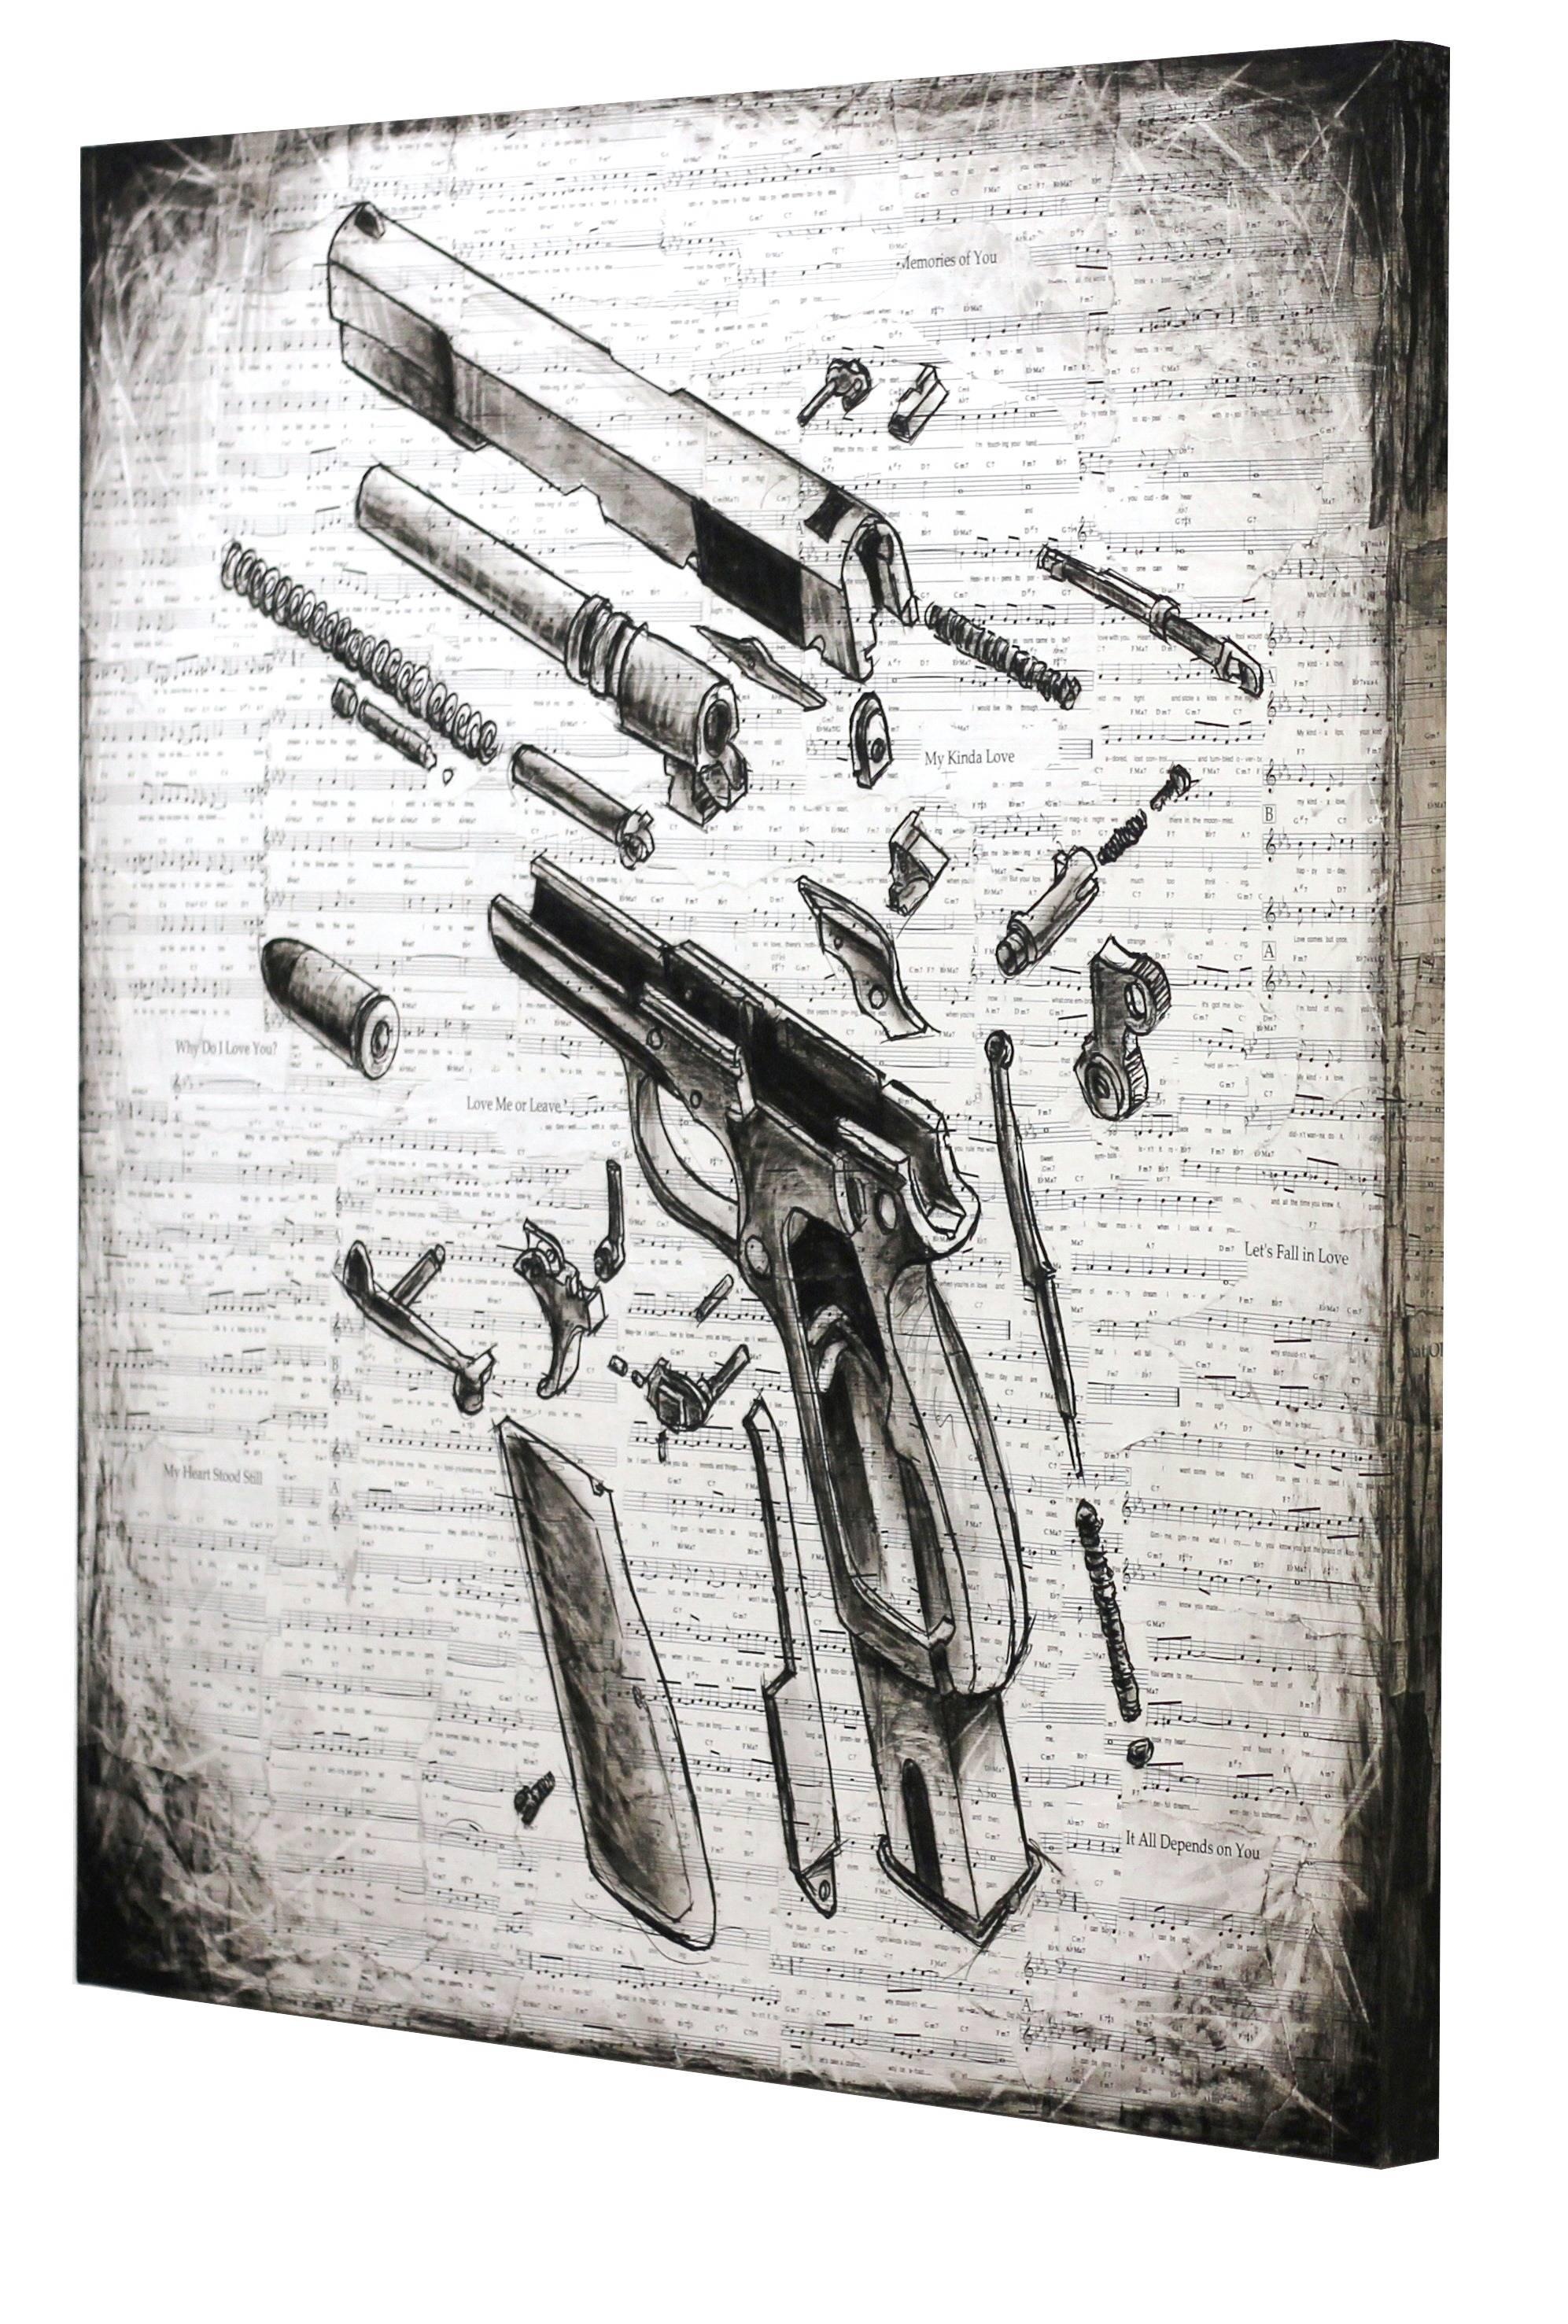 Robert Lebsack schafft Kunstwerke in Mischtechnik mit Tinte, Acryl und Kohle auf Archivkopien von Zeitungen, Schulbüchern und Notenblättern. Als visionärer Künstler entwirft Lebsack Geschichten, die zum Nachdenken anregen, und setzt sich mit dem